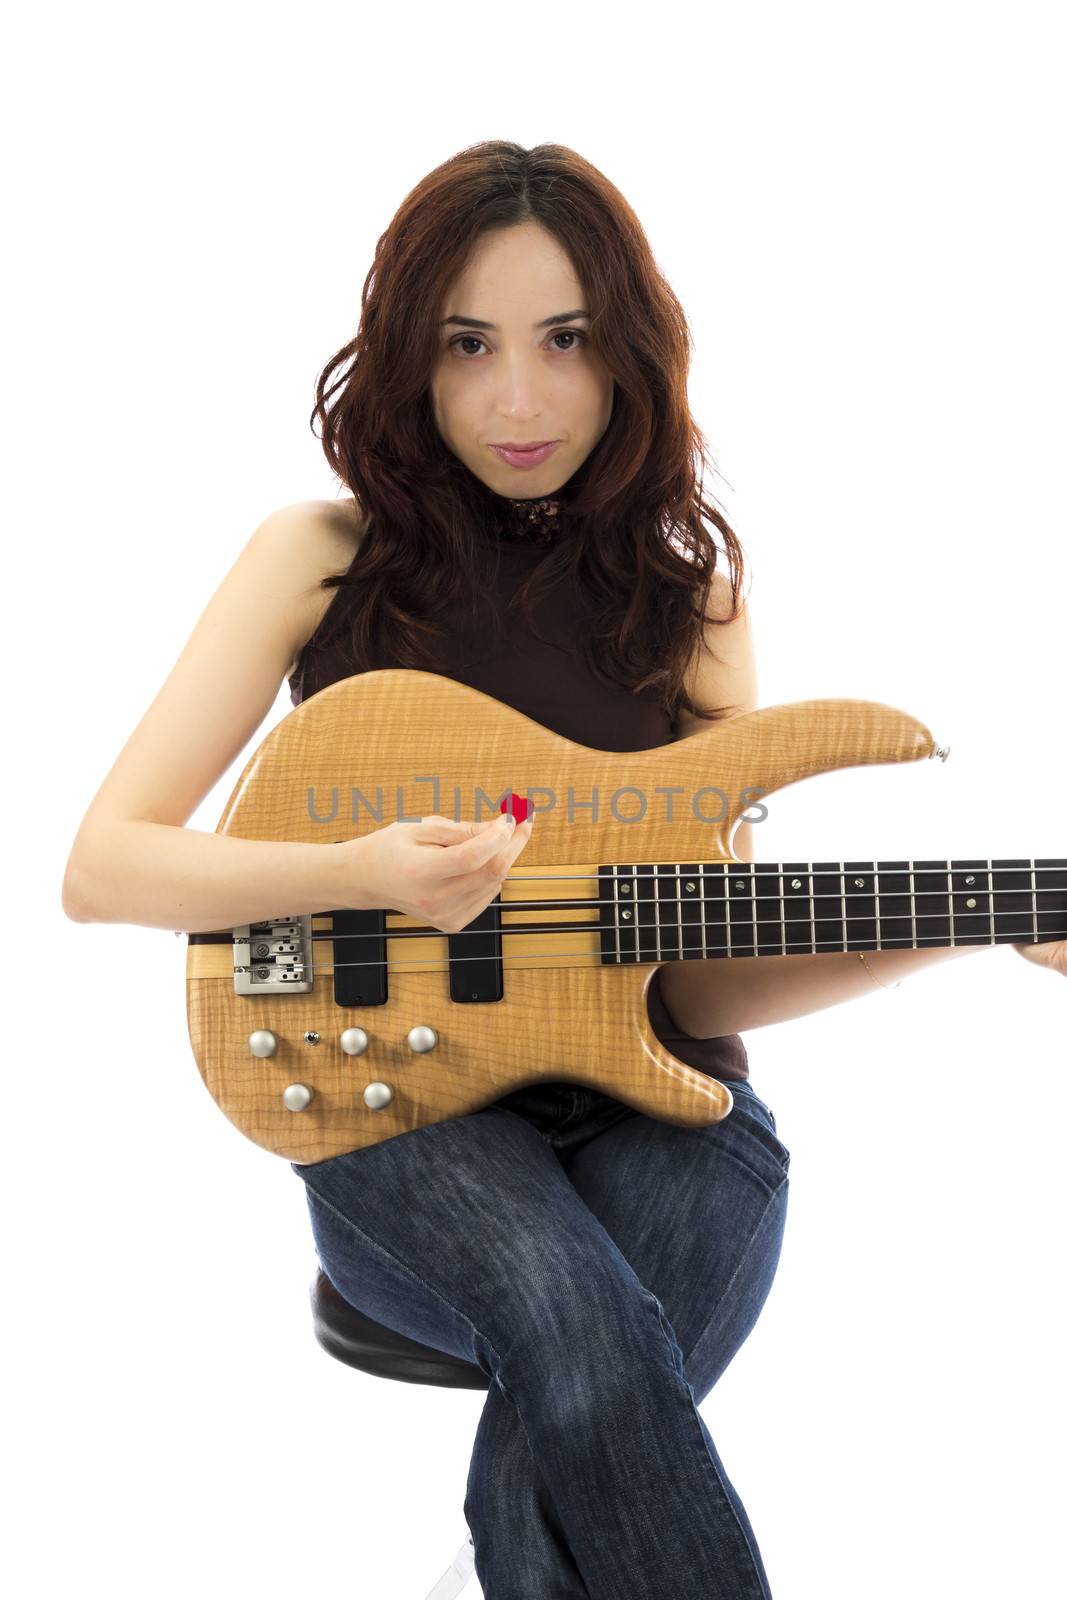 Bass player woman by snowwhite